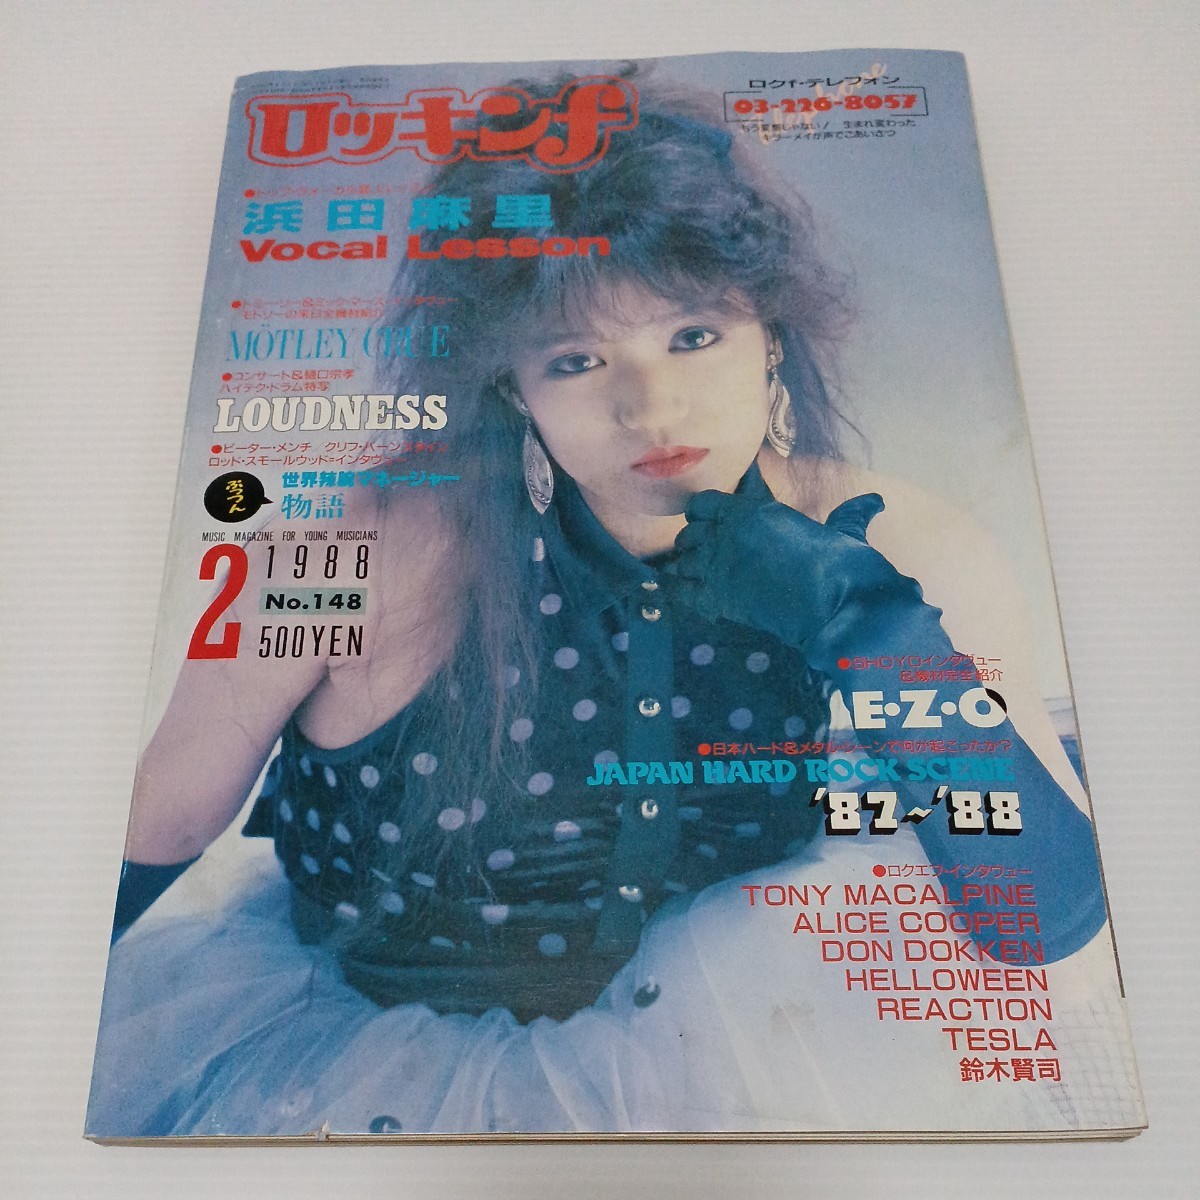 ロッキンf 1988年2月号 浜田麻里 モトリー・クルー ラウドネス E・Z・O 日本ハード・シーン87~88_画像1